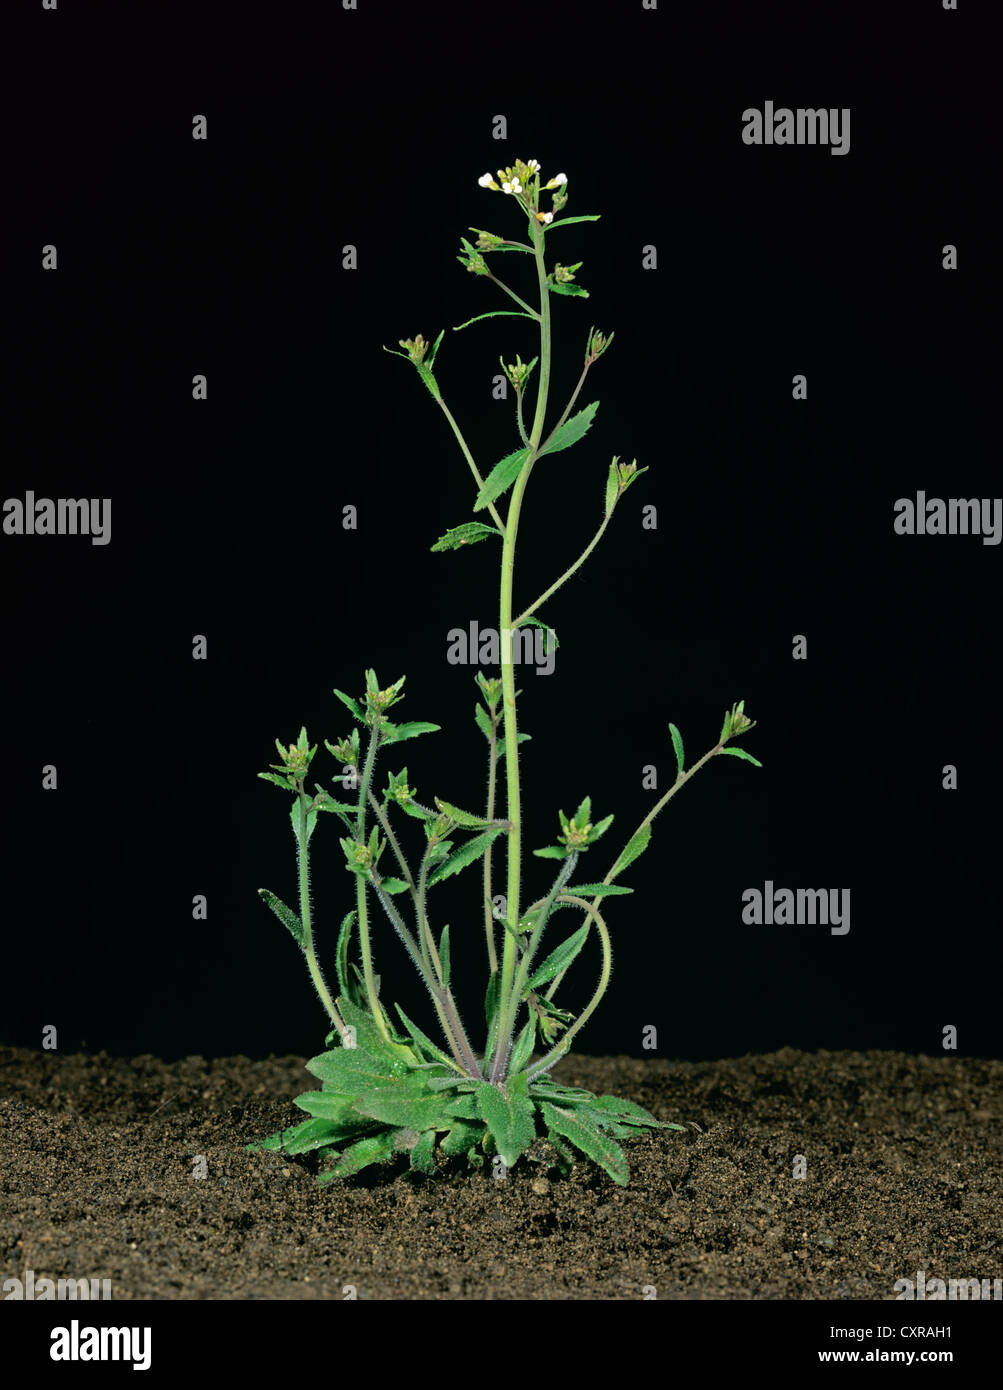 Thale Kresse (Arabidopsis Thaliana) blühende Pflanze in genetische Experimente verwendet Stockfoto